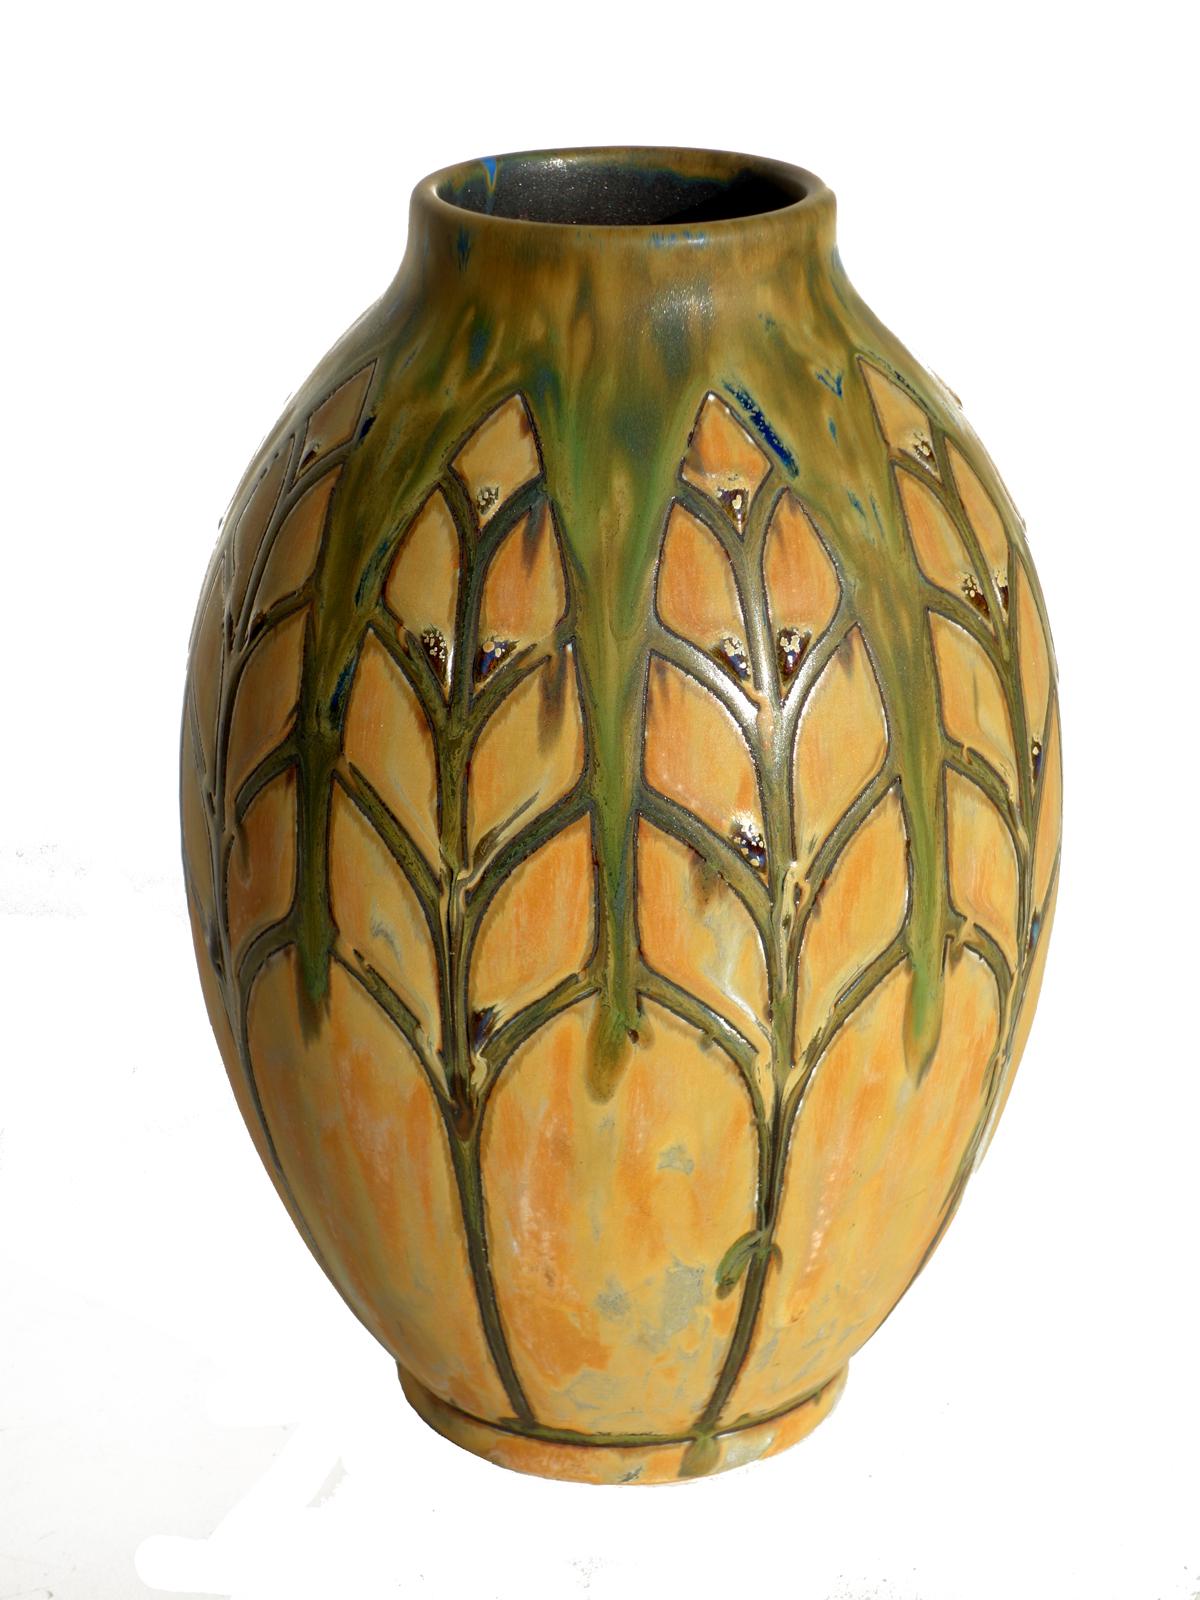 Schöne Vase des Art déco von Charles Catteau
Boch, La Louviers
Gres Keramis

Glasierte Keramik
Ausgezeichneter Zustand
